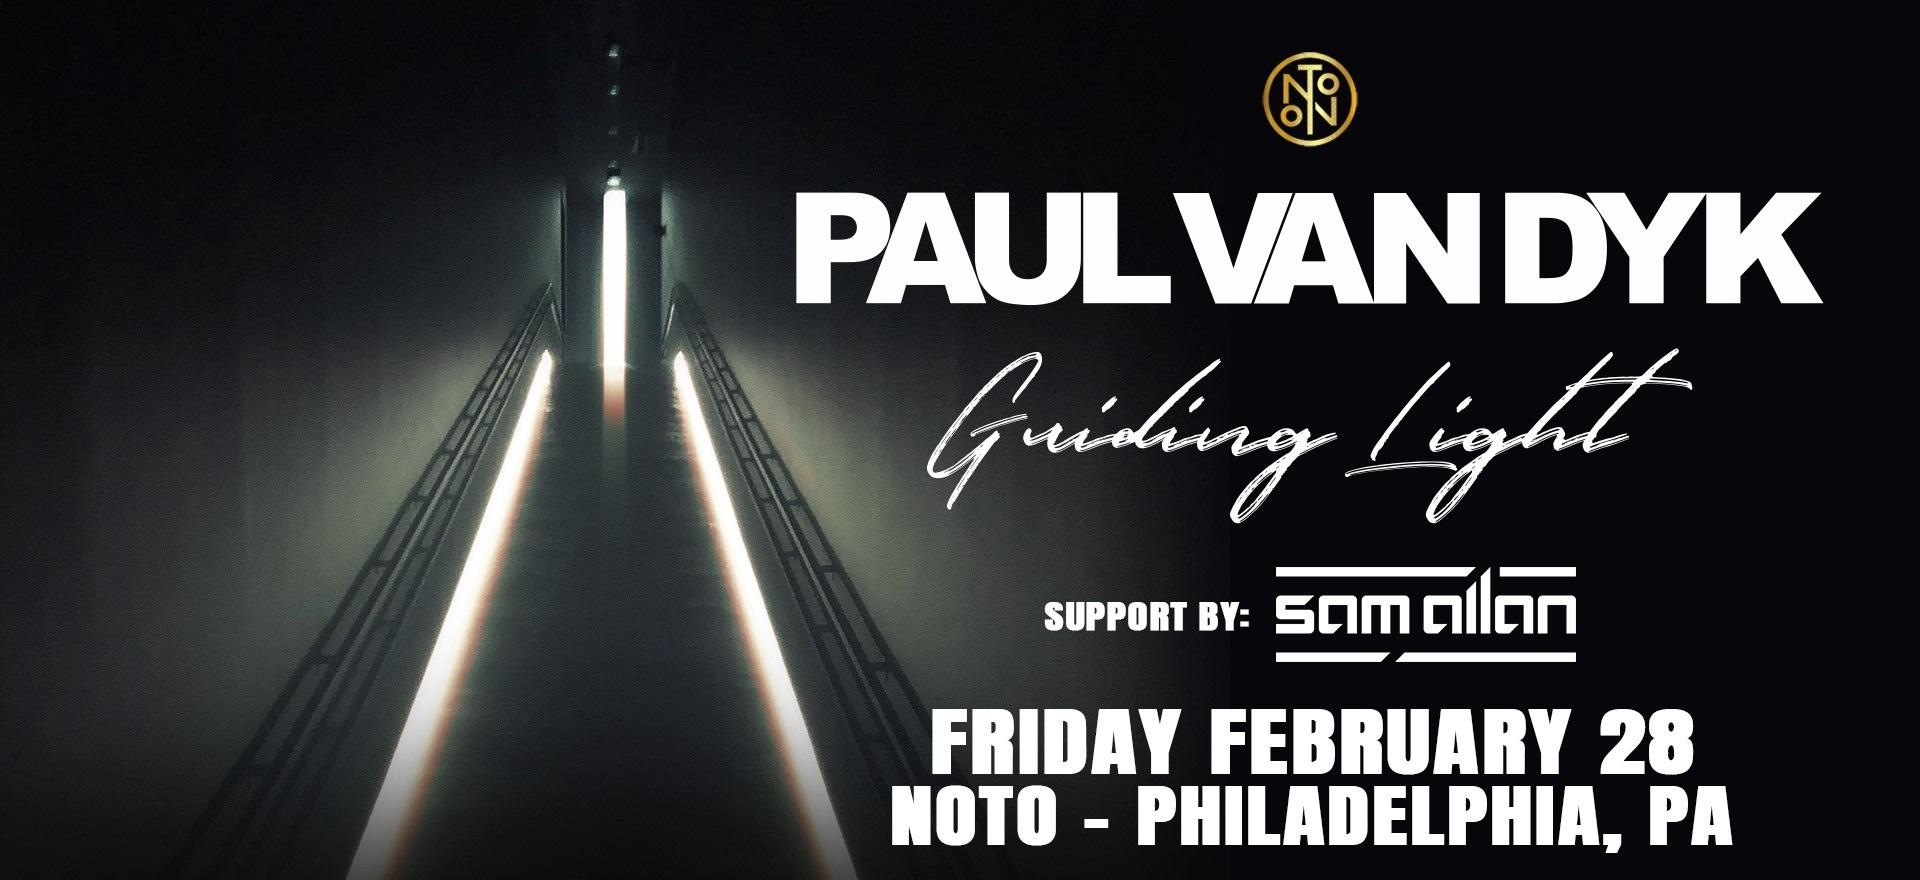 Paul Van Dyk @ Noto Philly Feb 28